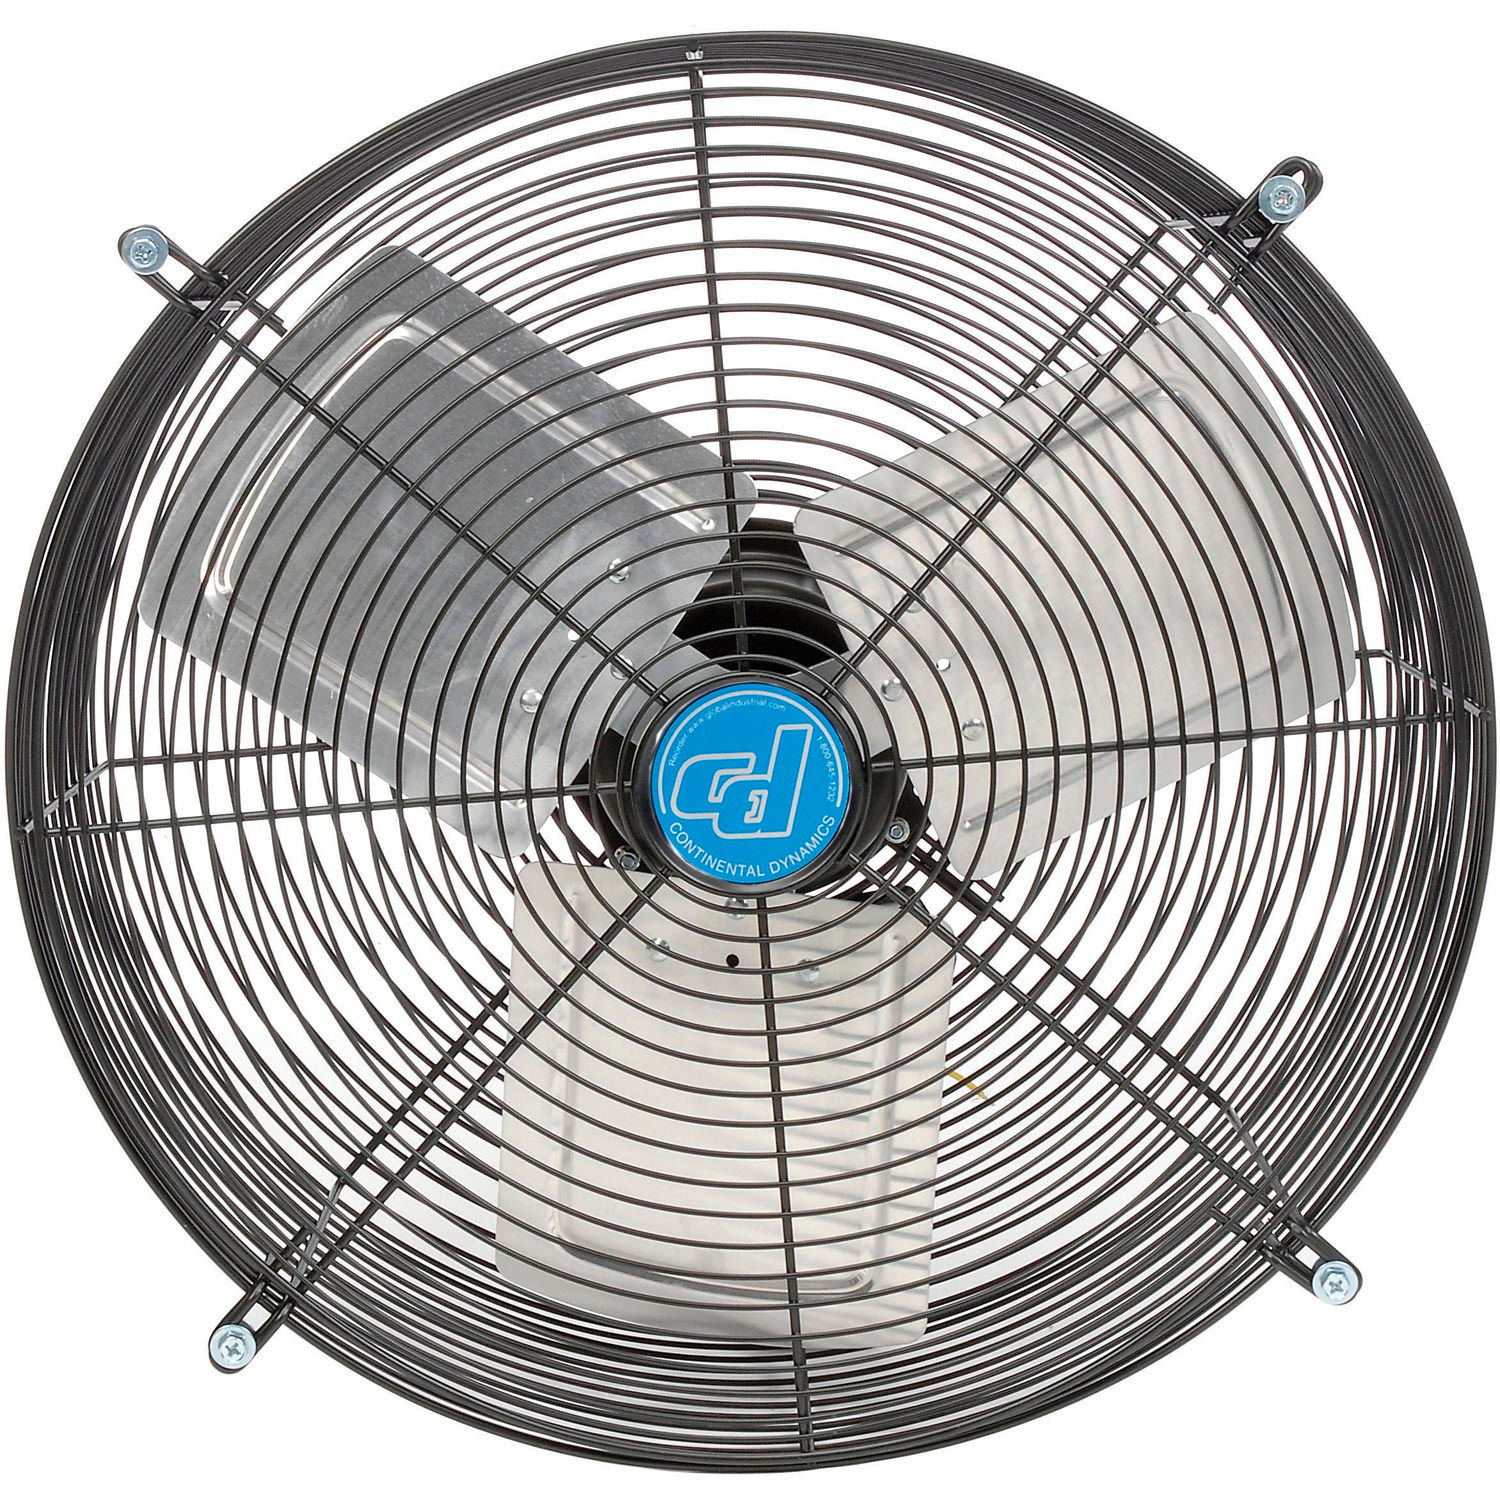 Exhaust Fans & Ventilation | Exhaust Fans - Shutter & Guard Mount | 18